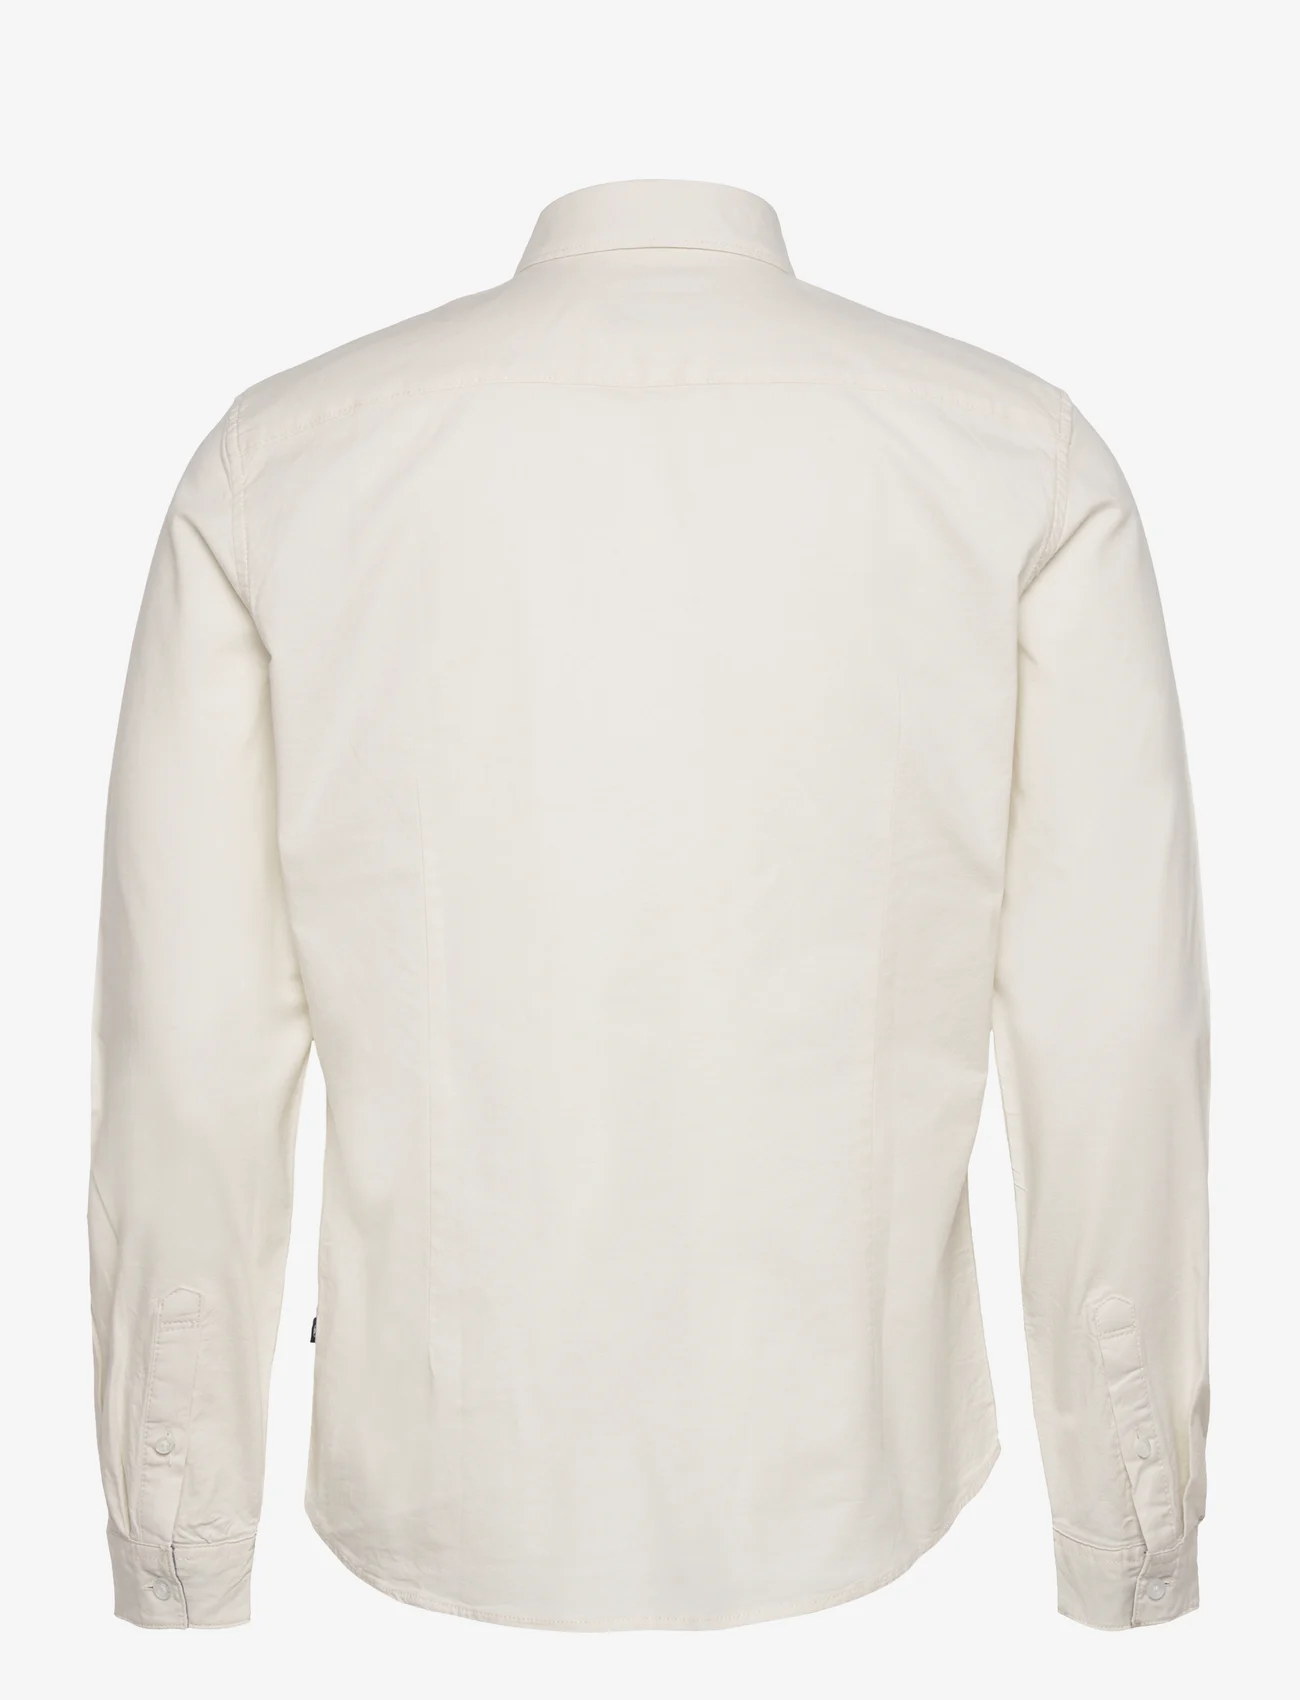 Tom Tailor - fitted stretch oxford shirt - laveste priser - vintage beige - 1